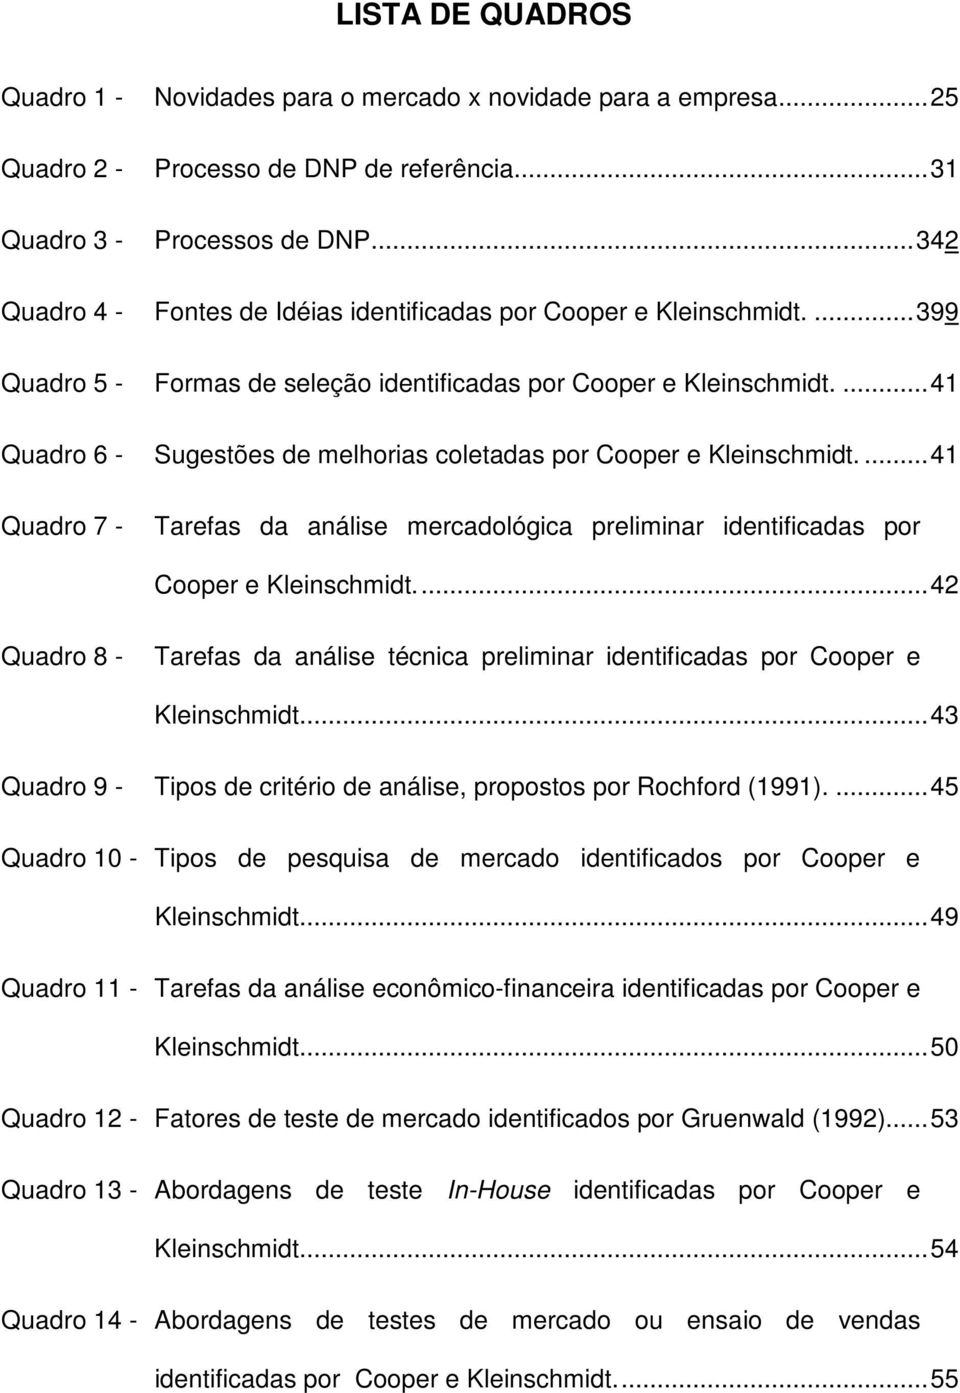 ... 41 Quadro 6 - Sugestões de melhorias coletadas por Cooper e Kleinschmidt.... 41 Quadro 7 - Tarefas da análise mercadológica preliminar identificadas por Cooper e Kleinschmidt.